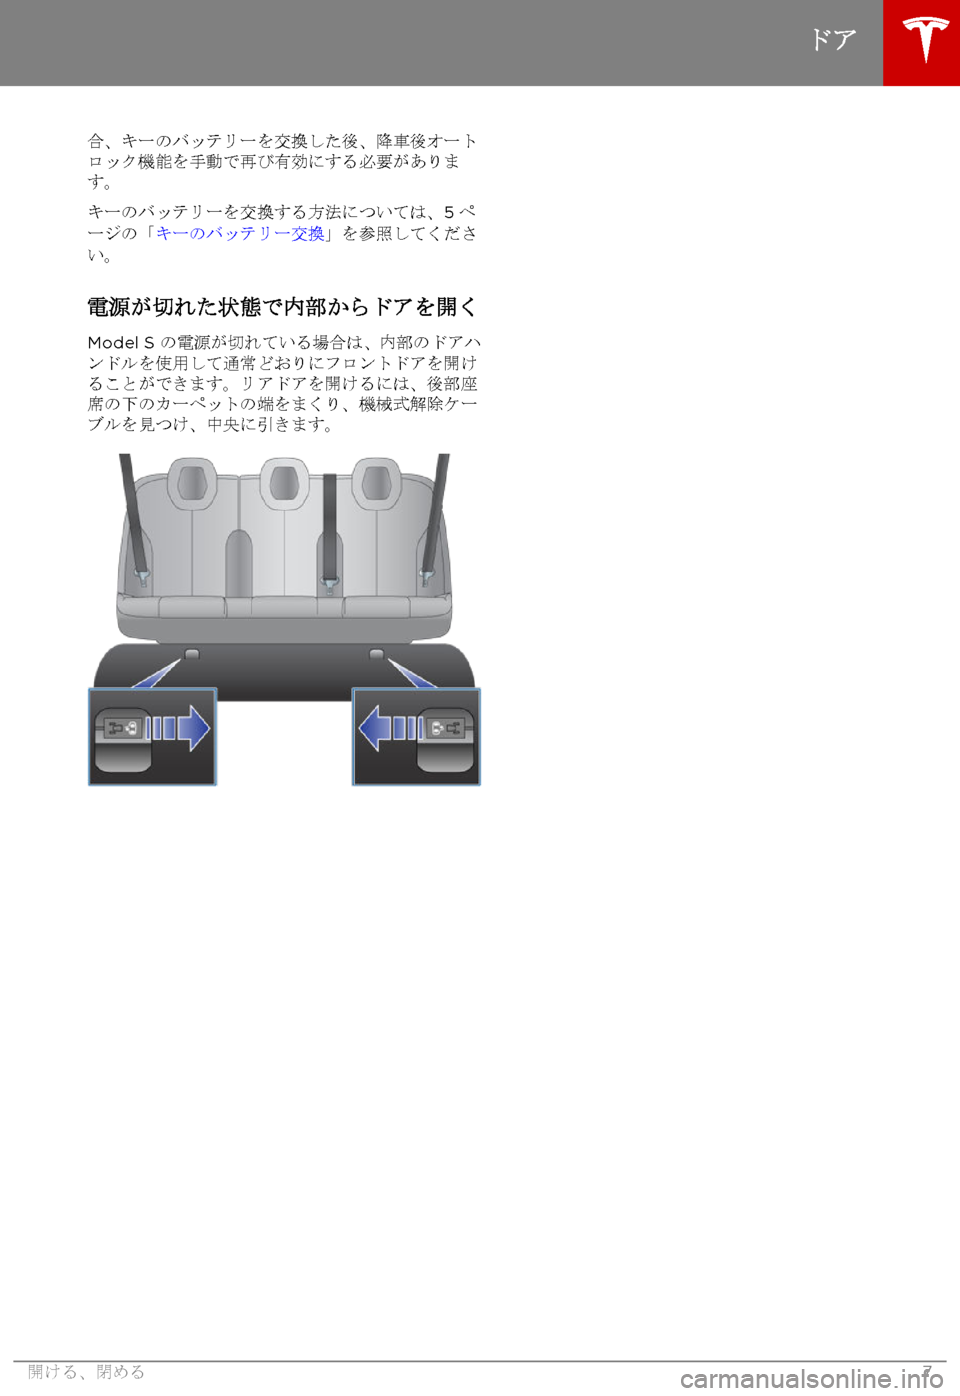 TESLA MODEL S 2015  取扱説明書 (in Japanese)  合、キーのバッテリーを交換した後、降車後オートロック機能を手動で再び有効にする必要があります。
キーのバッテリーを交換する方法について�